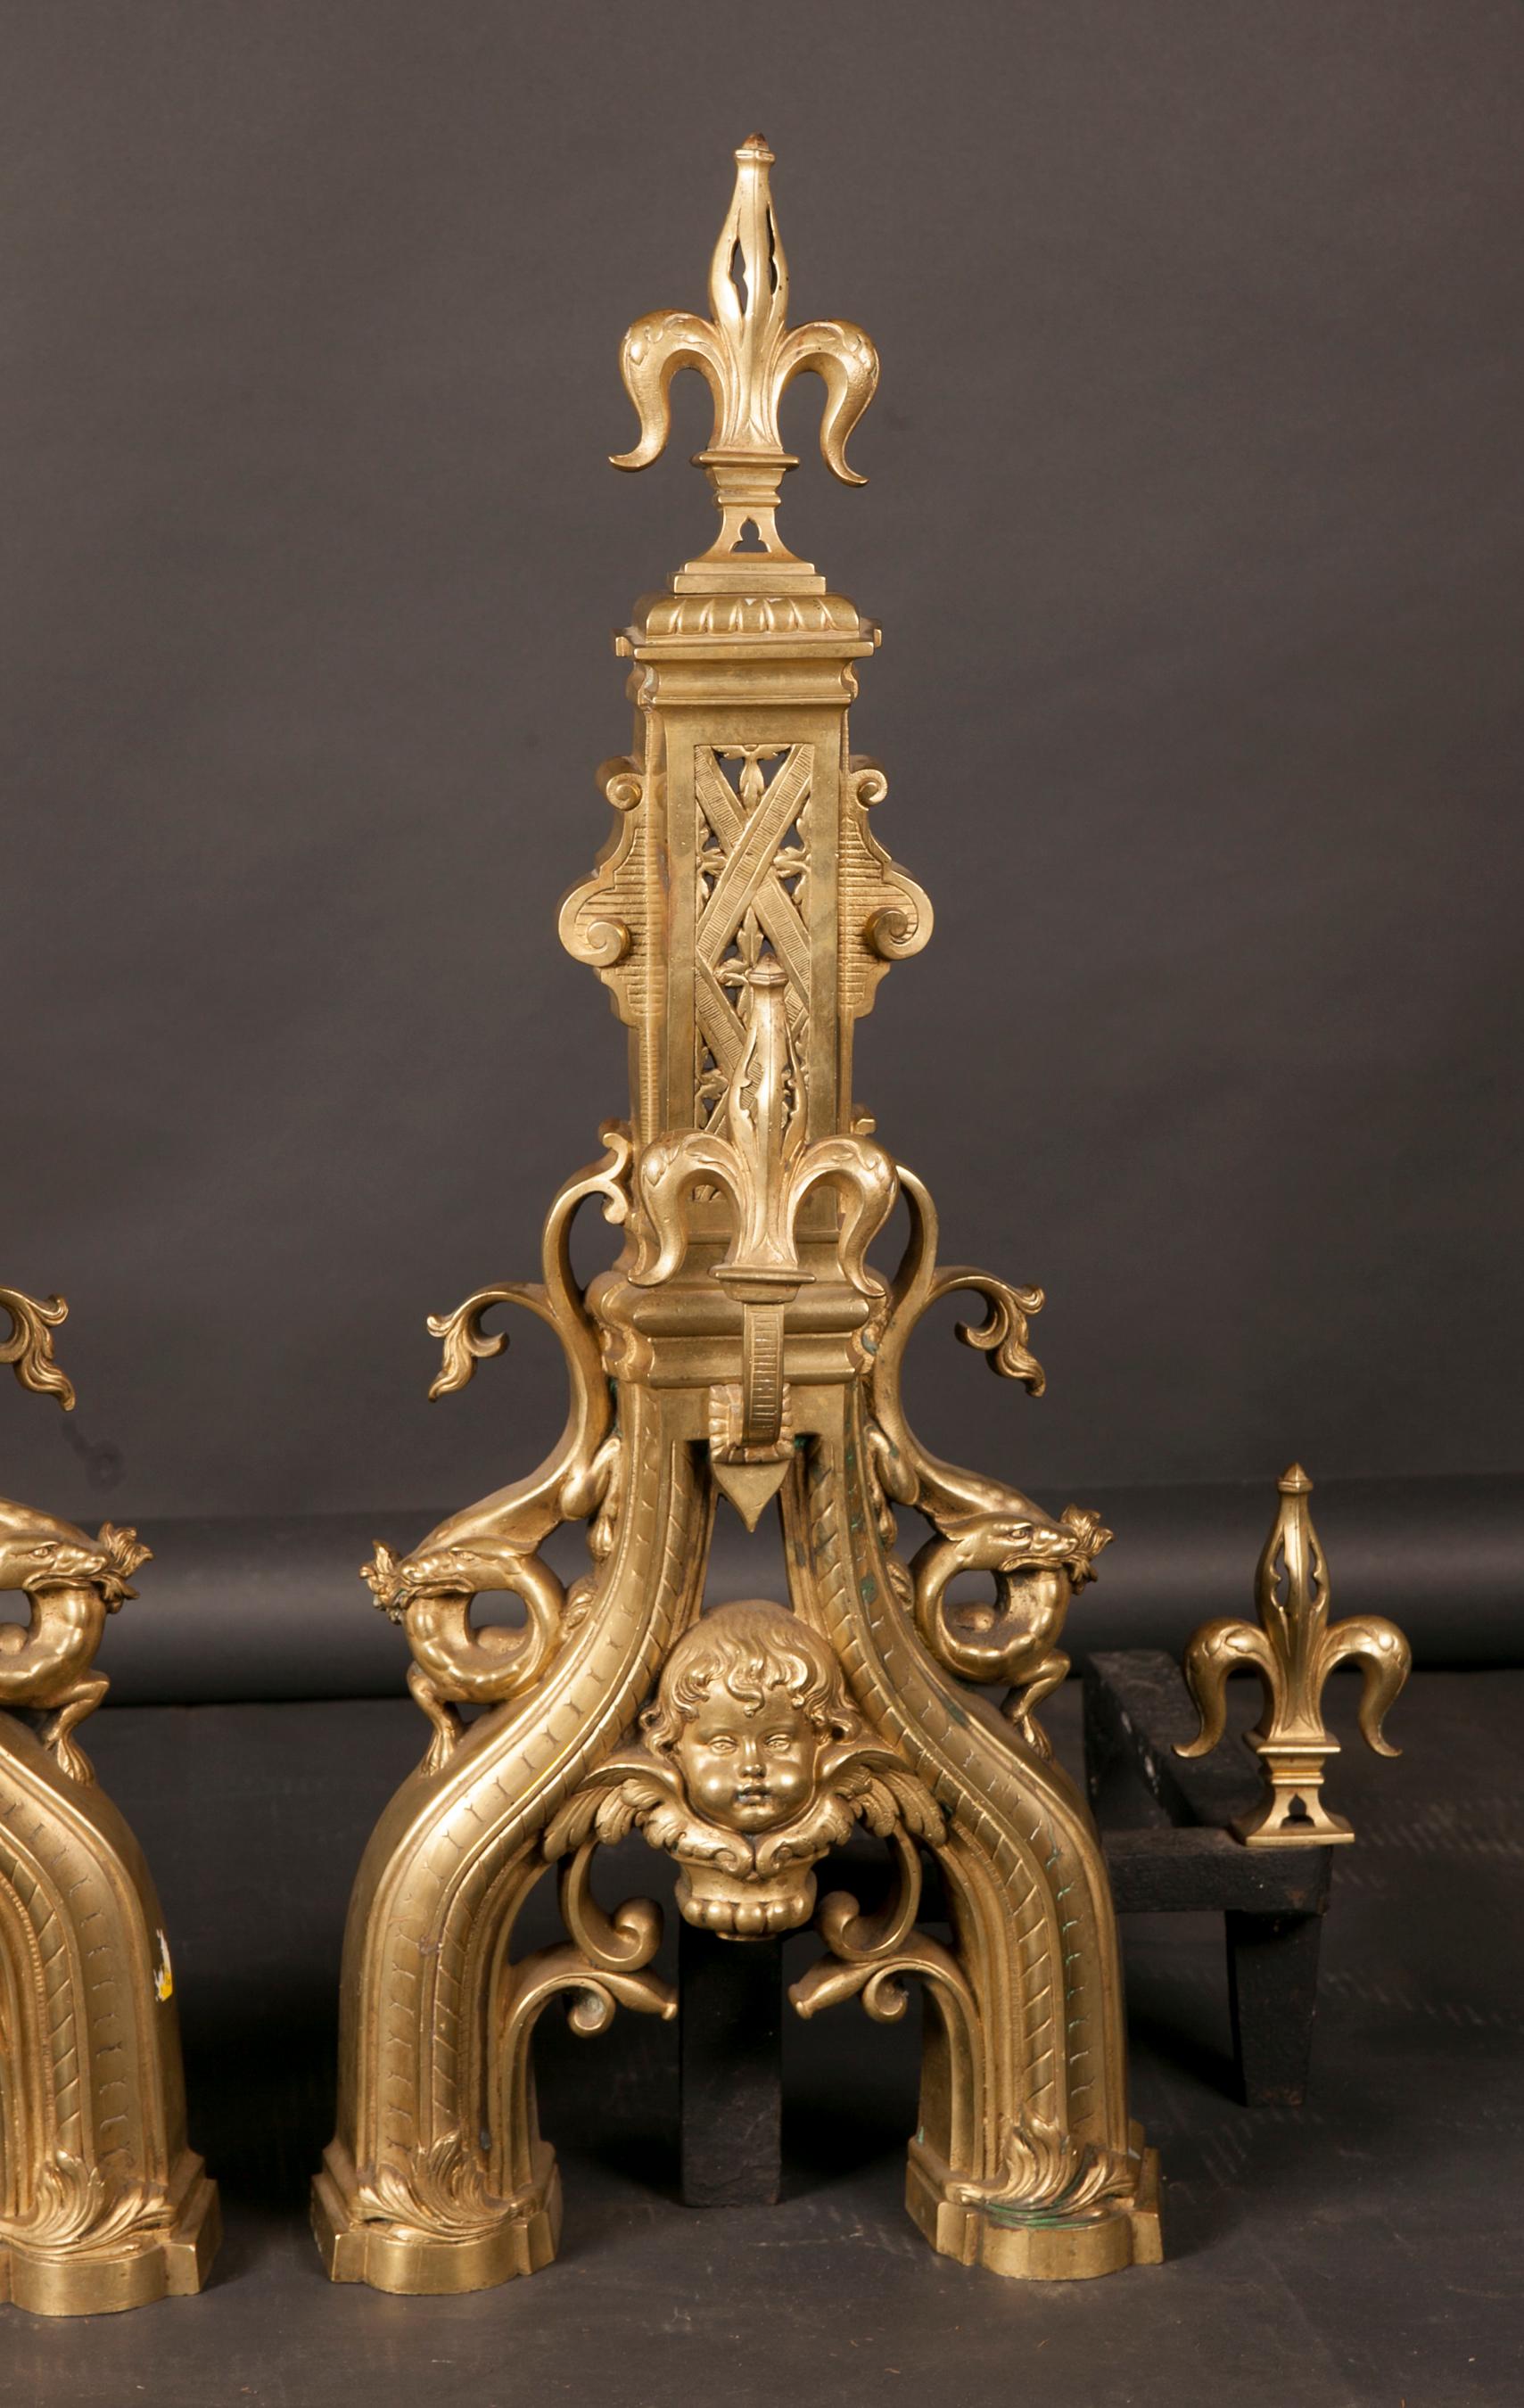 Cette fantastique paire de chenets monumentaux français de style Louis XVI est en bronze et date du XVIIIe siècle. La paire est ornée de fleurs de lis au sommet, au centre et aux extrémités, et un visage de putti se trouve au centre de chaque paire.